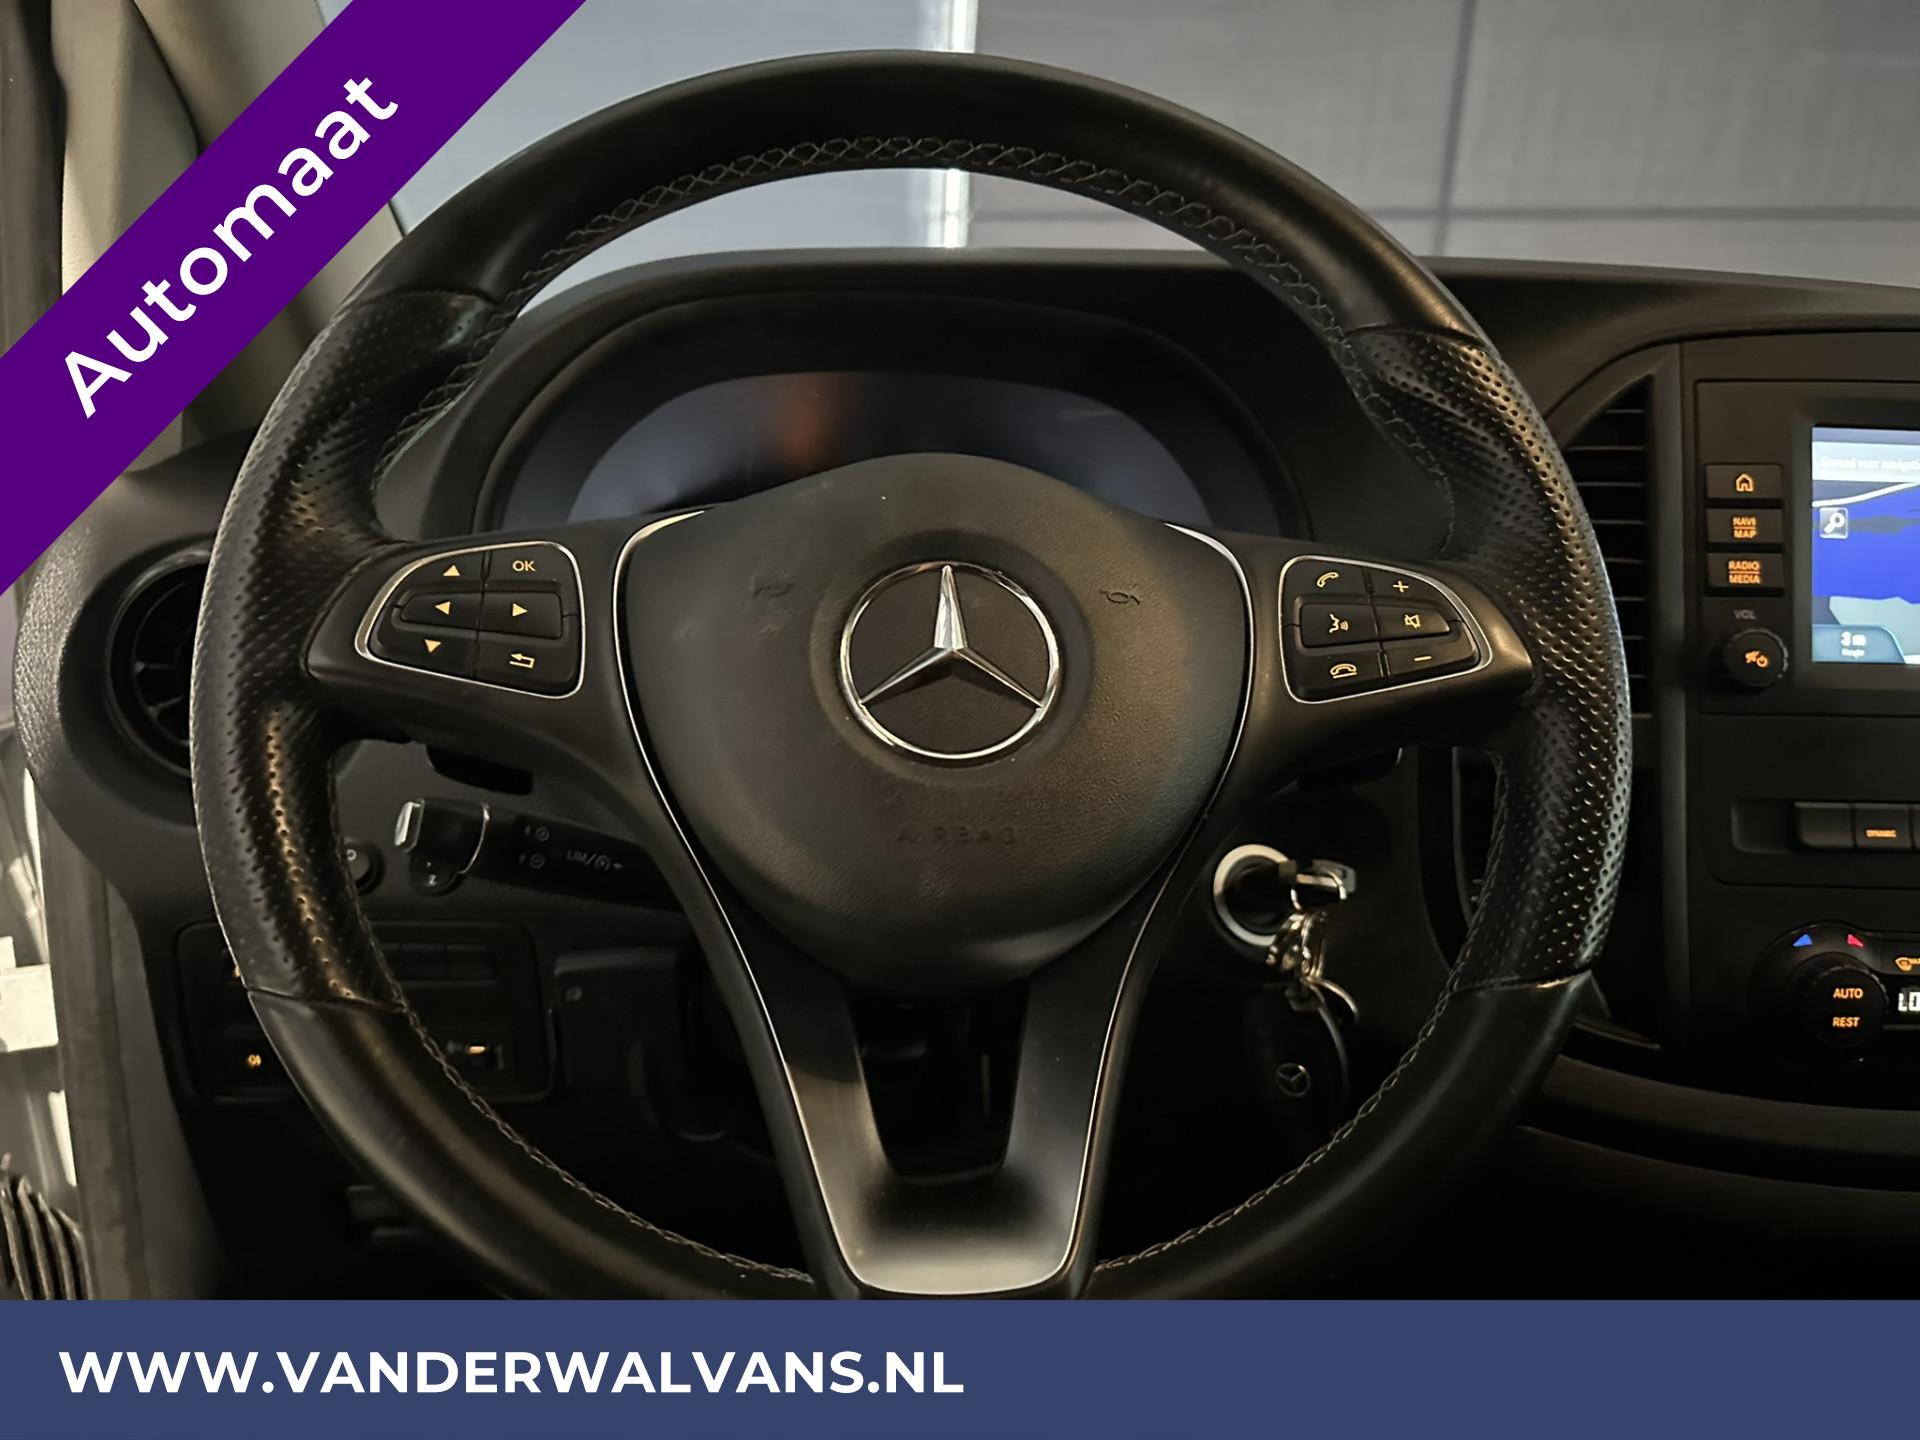 Foto 16 van Mercedes-Benz Vito 114 CDI 136pk 9G Tronic Automaat L2H1 Euro6 Airco | Camera | Navigatie | 2500kg Trekhaak